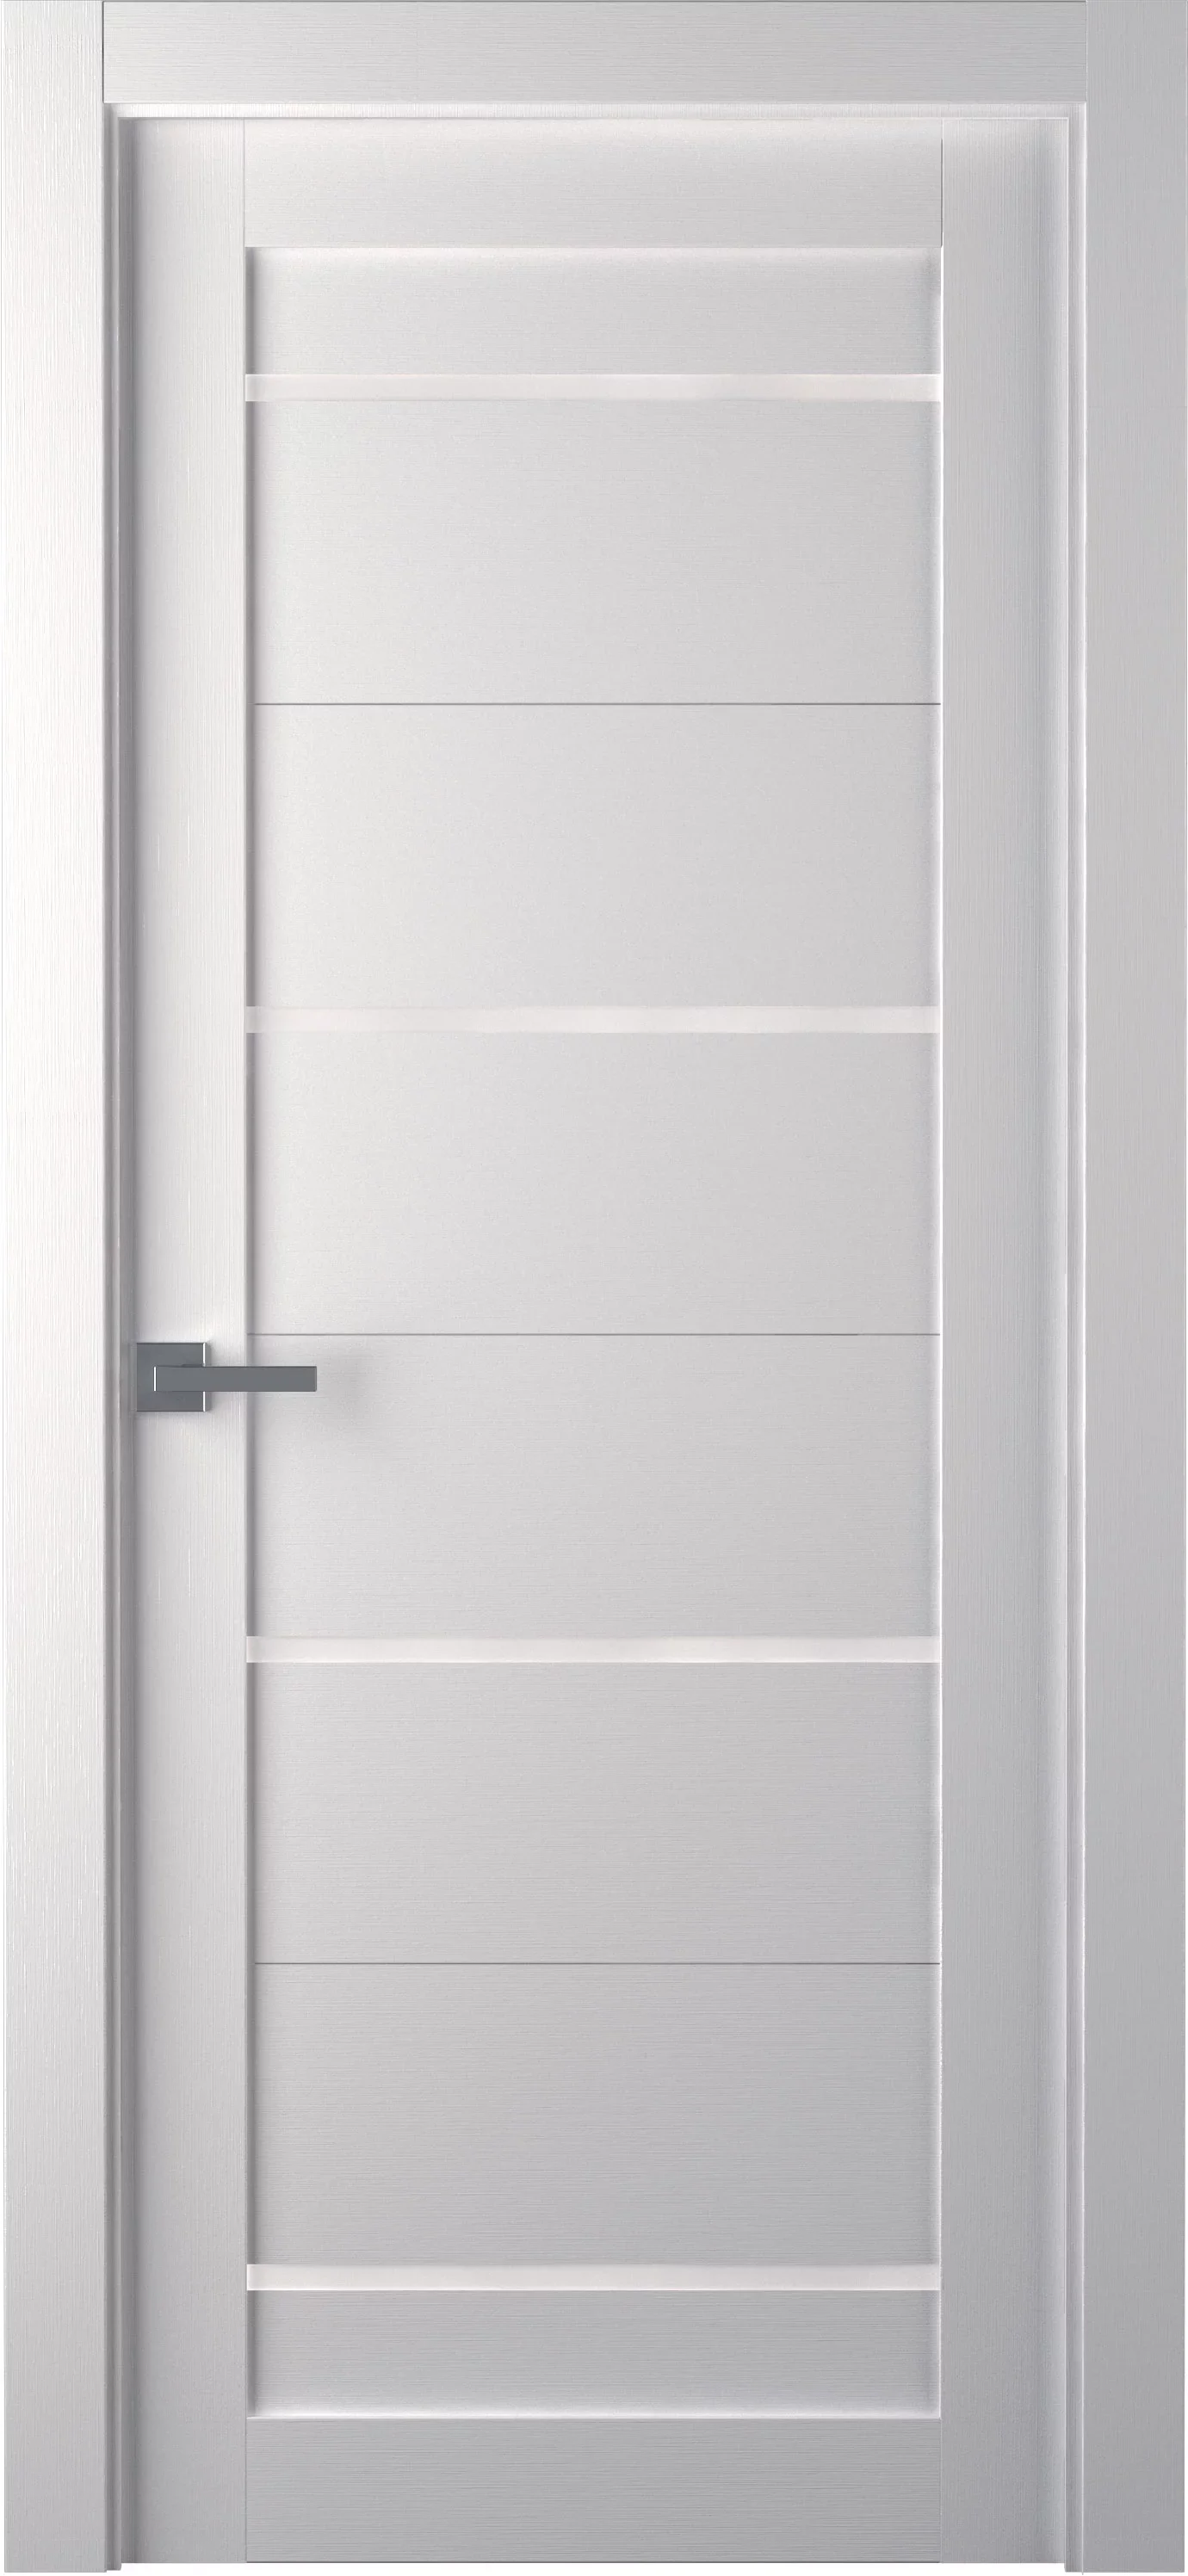 Durų staktos komplektas baltos tekstūrinės spalvos, 2,5 vnt., 7 x 2,8 x 210 cm - 2